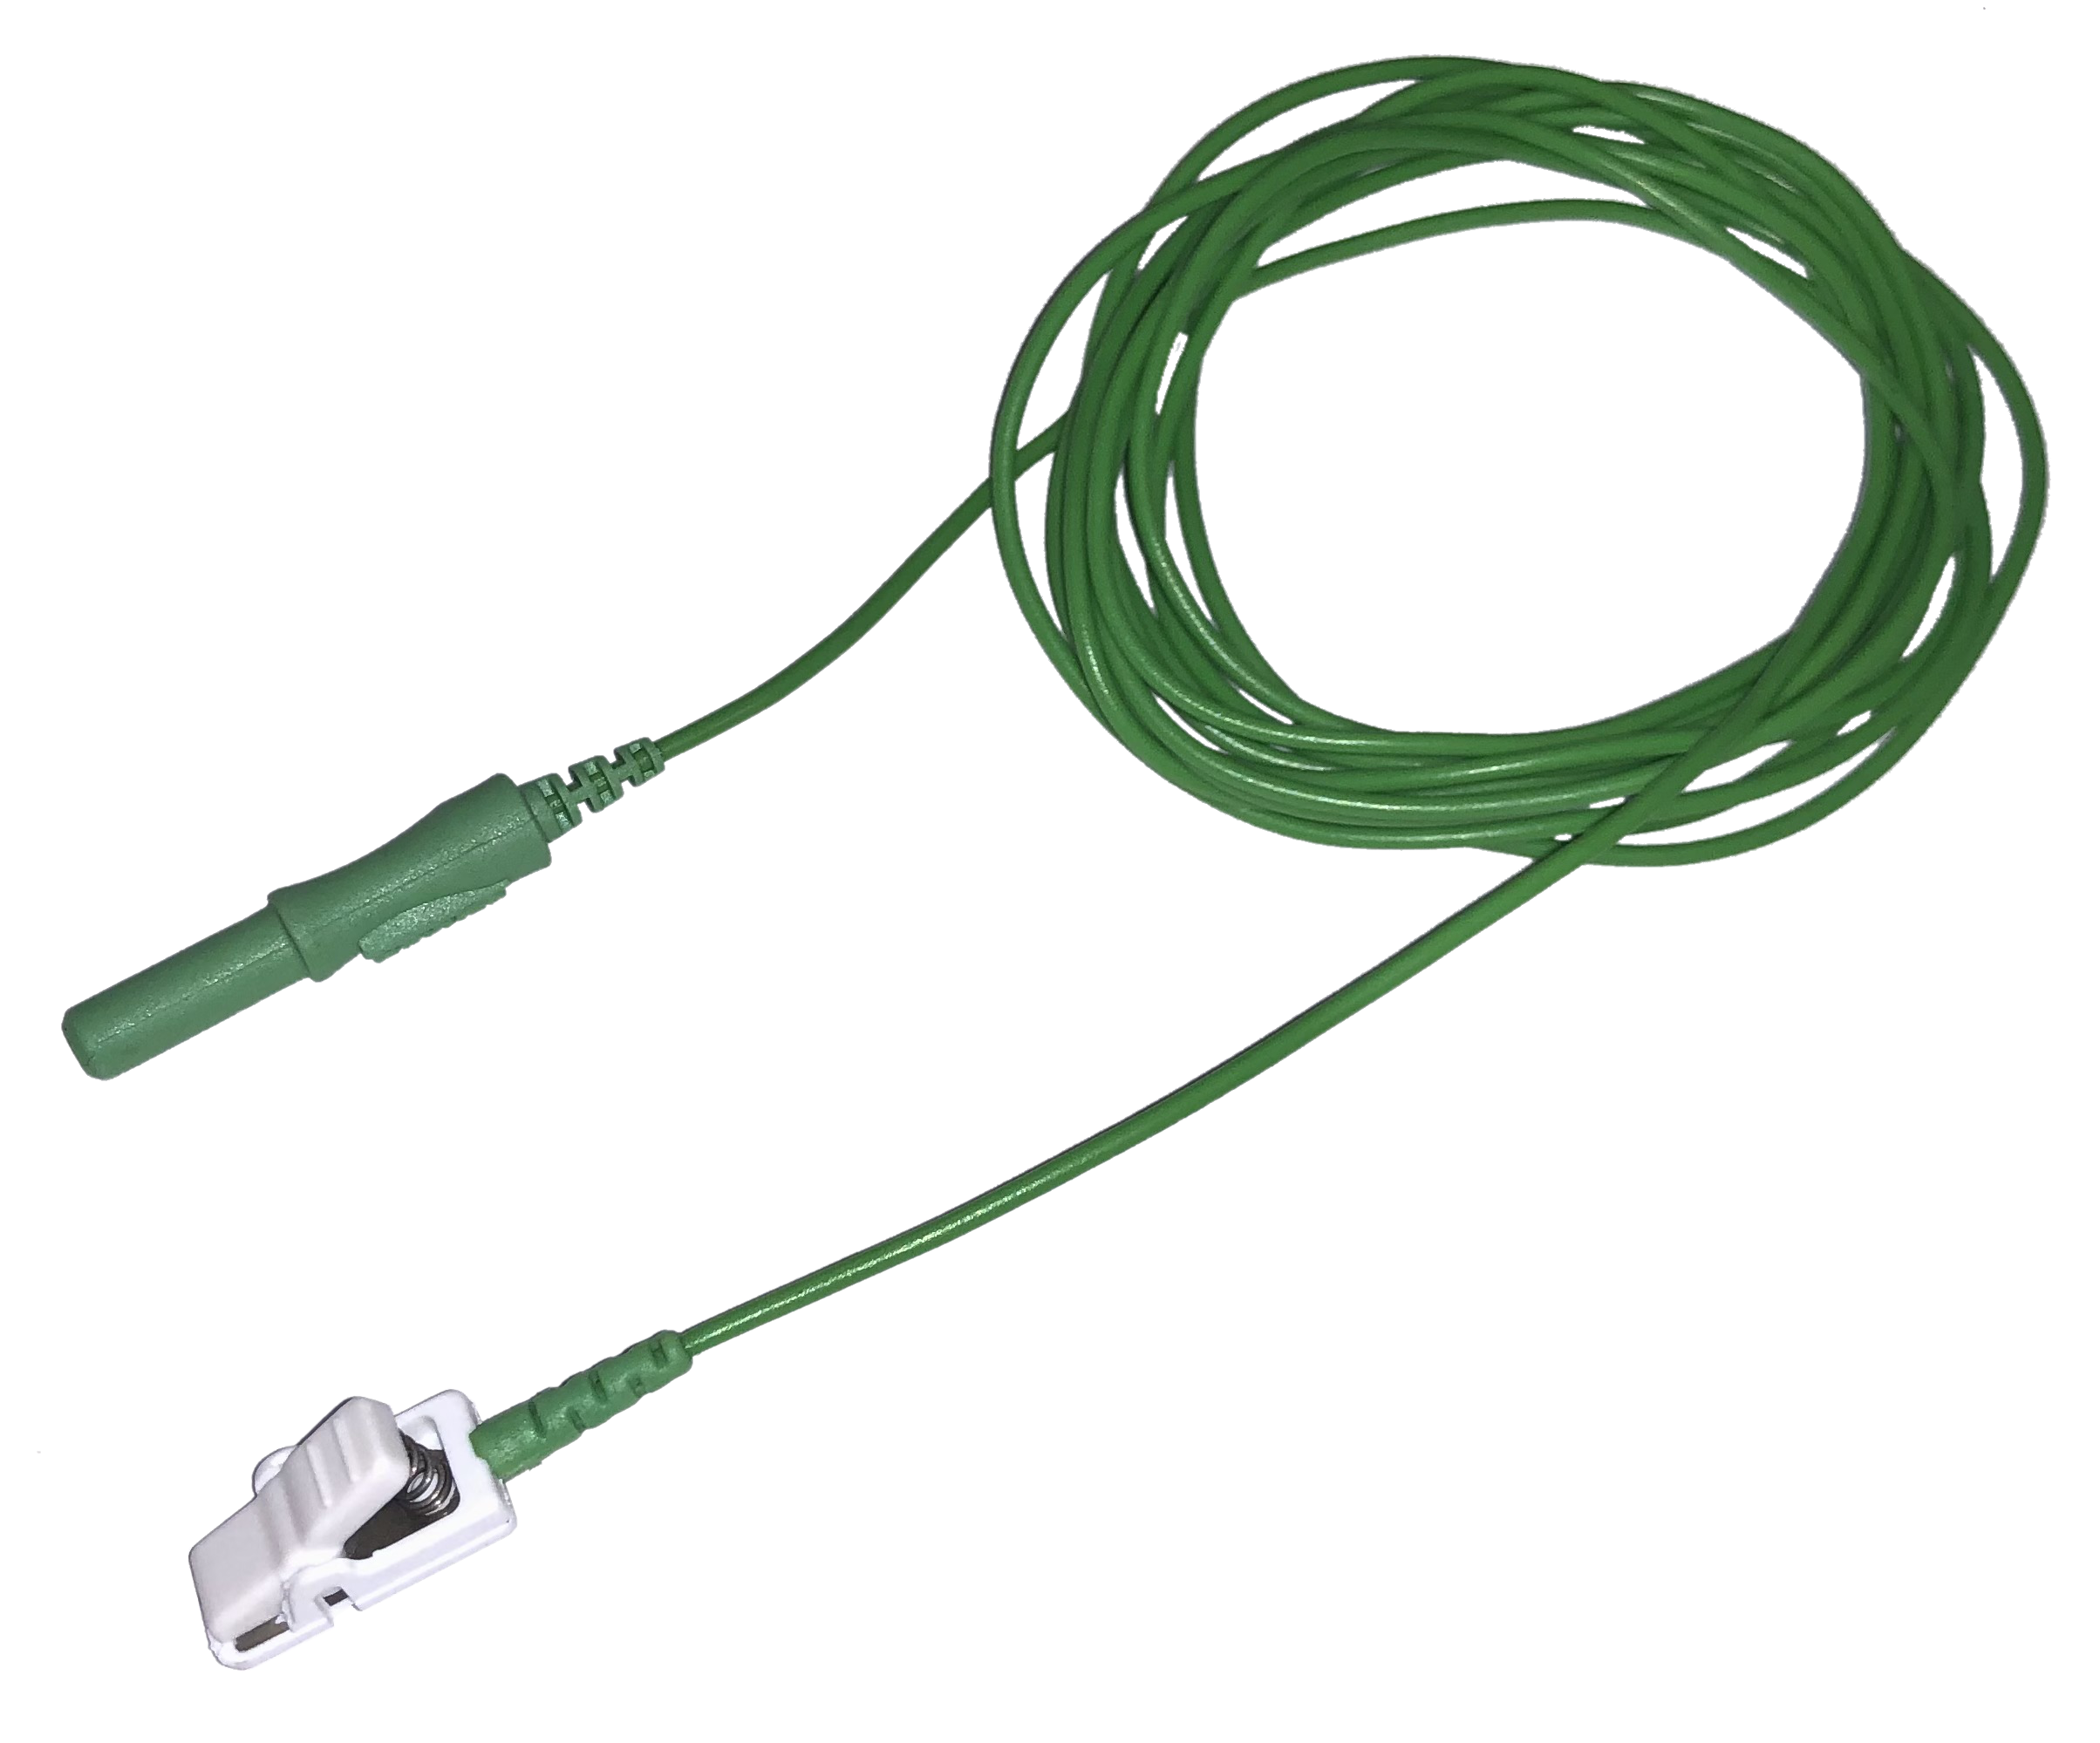 Kabel pro připojení nalepovacích elektrod TP, krokodýlek: 2 m, 1x (zelená)